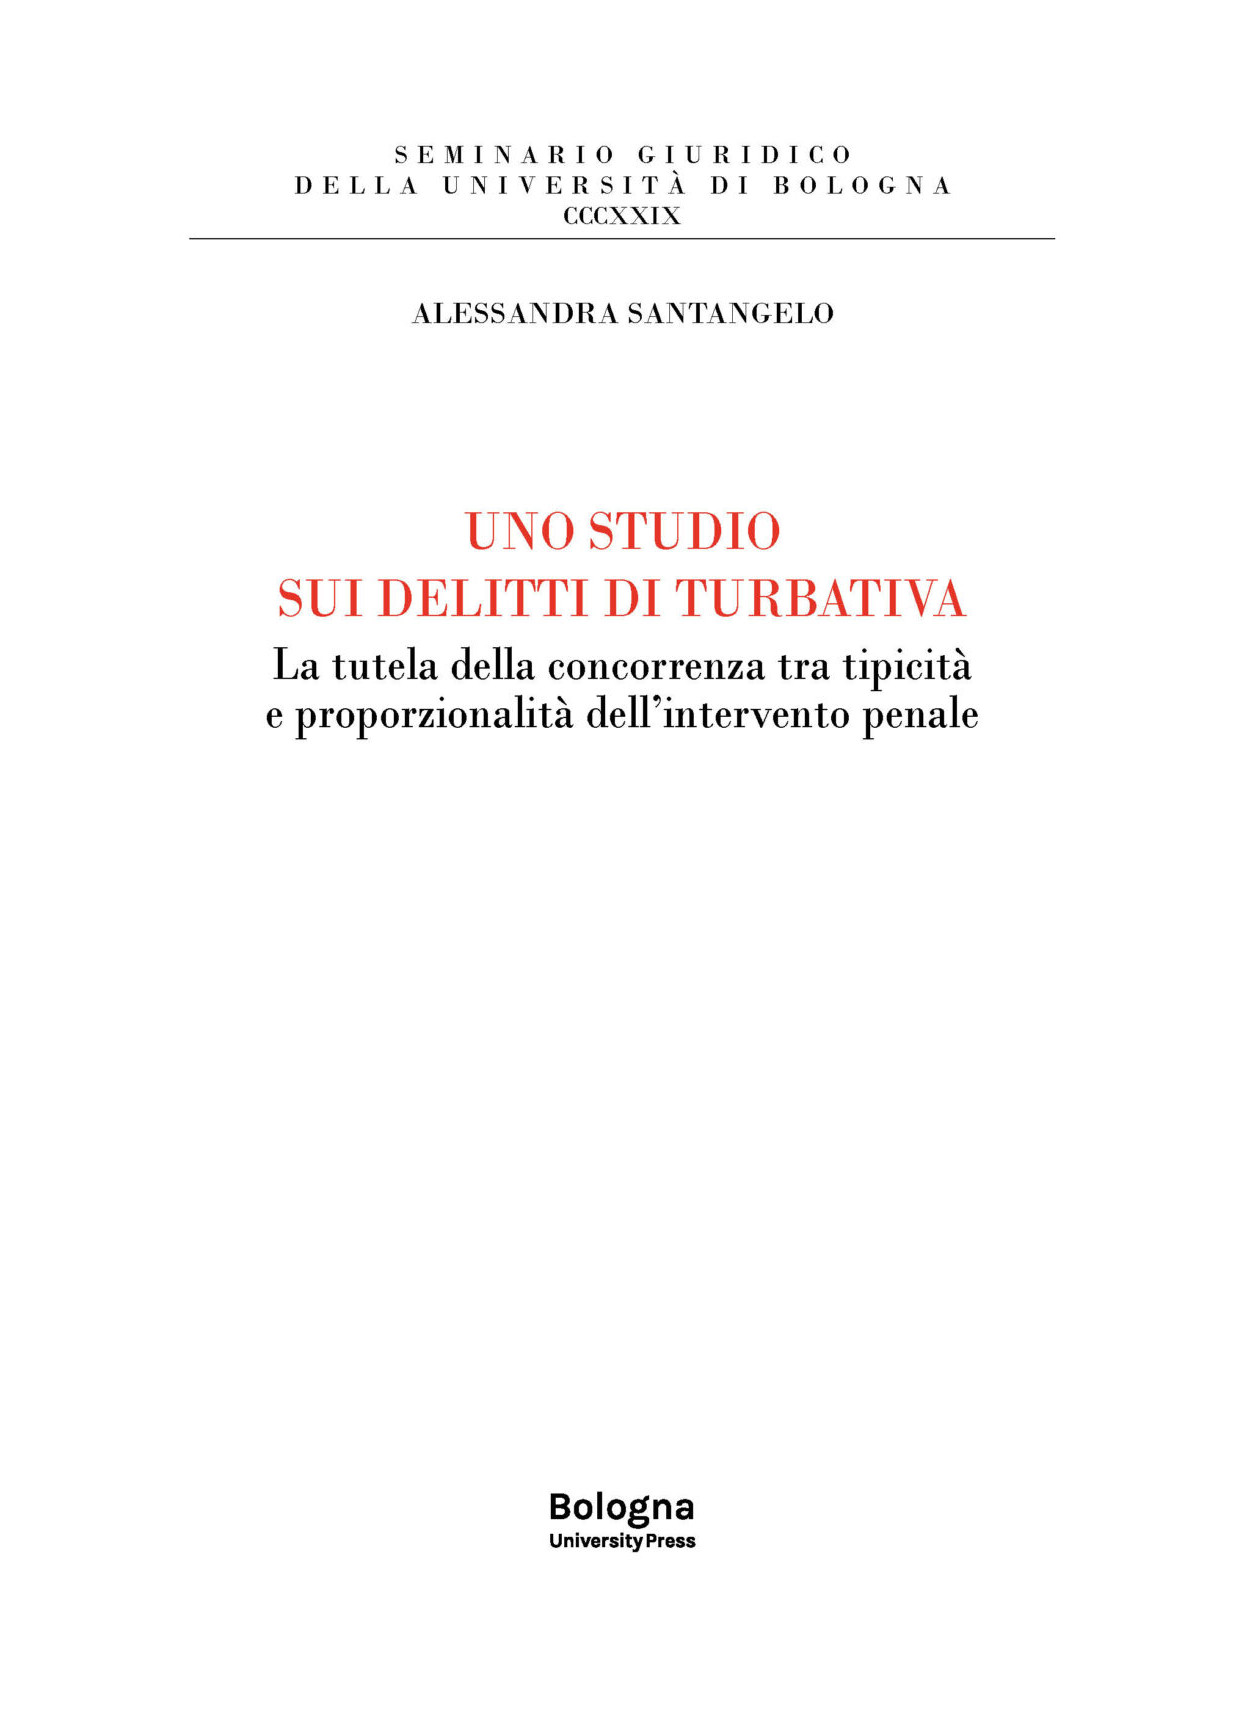 UNO STUDIO SUI DELITTI DI TURBATIVA - Bologna University Press